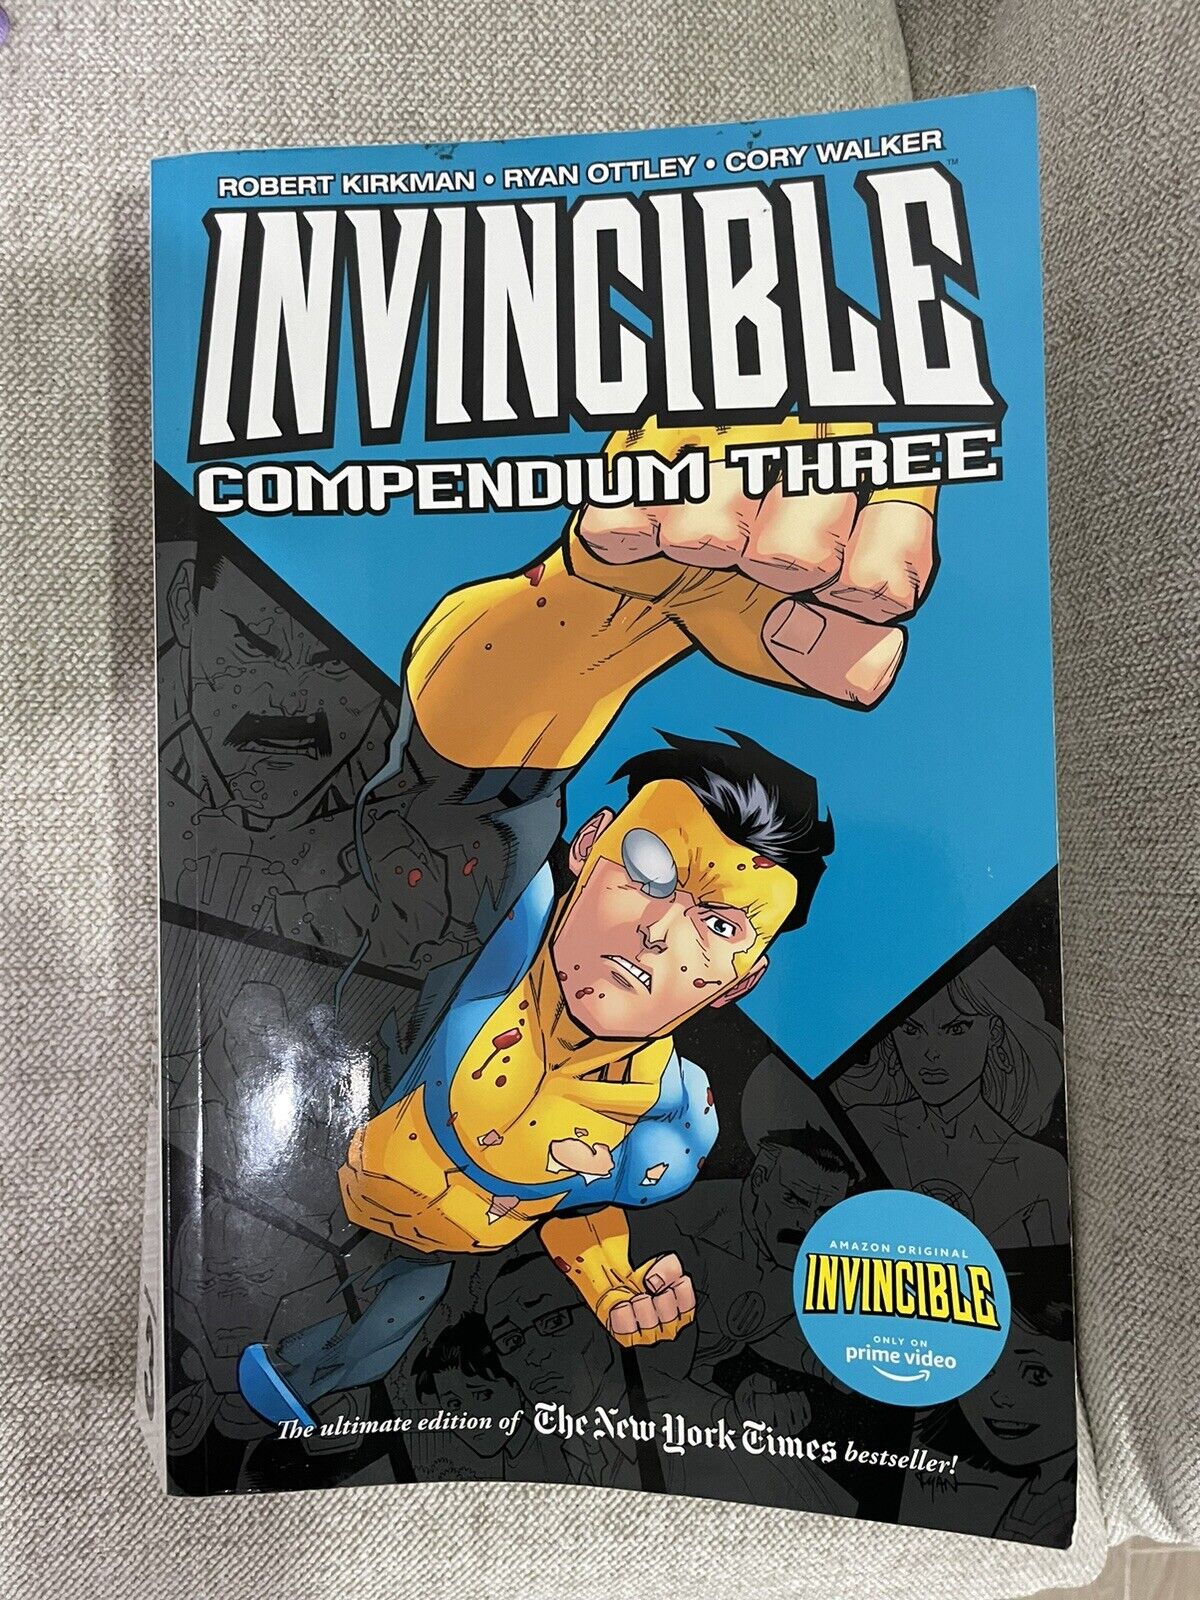 Invincible Compendium 3 - Robert Kirkman